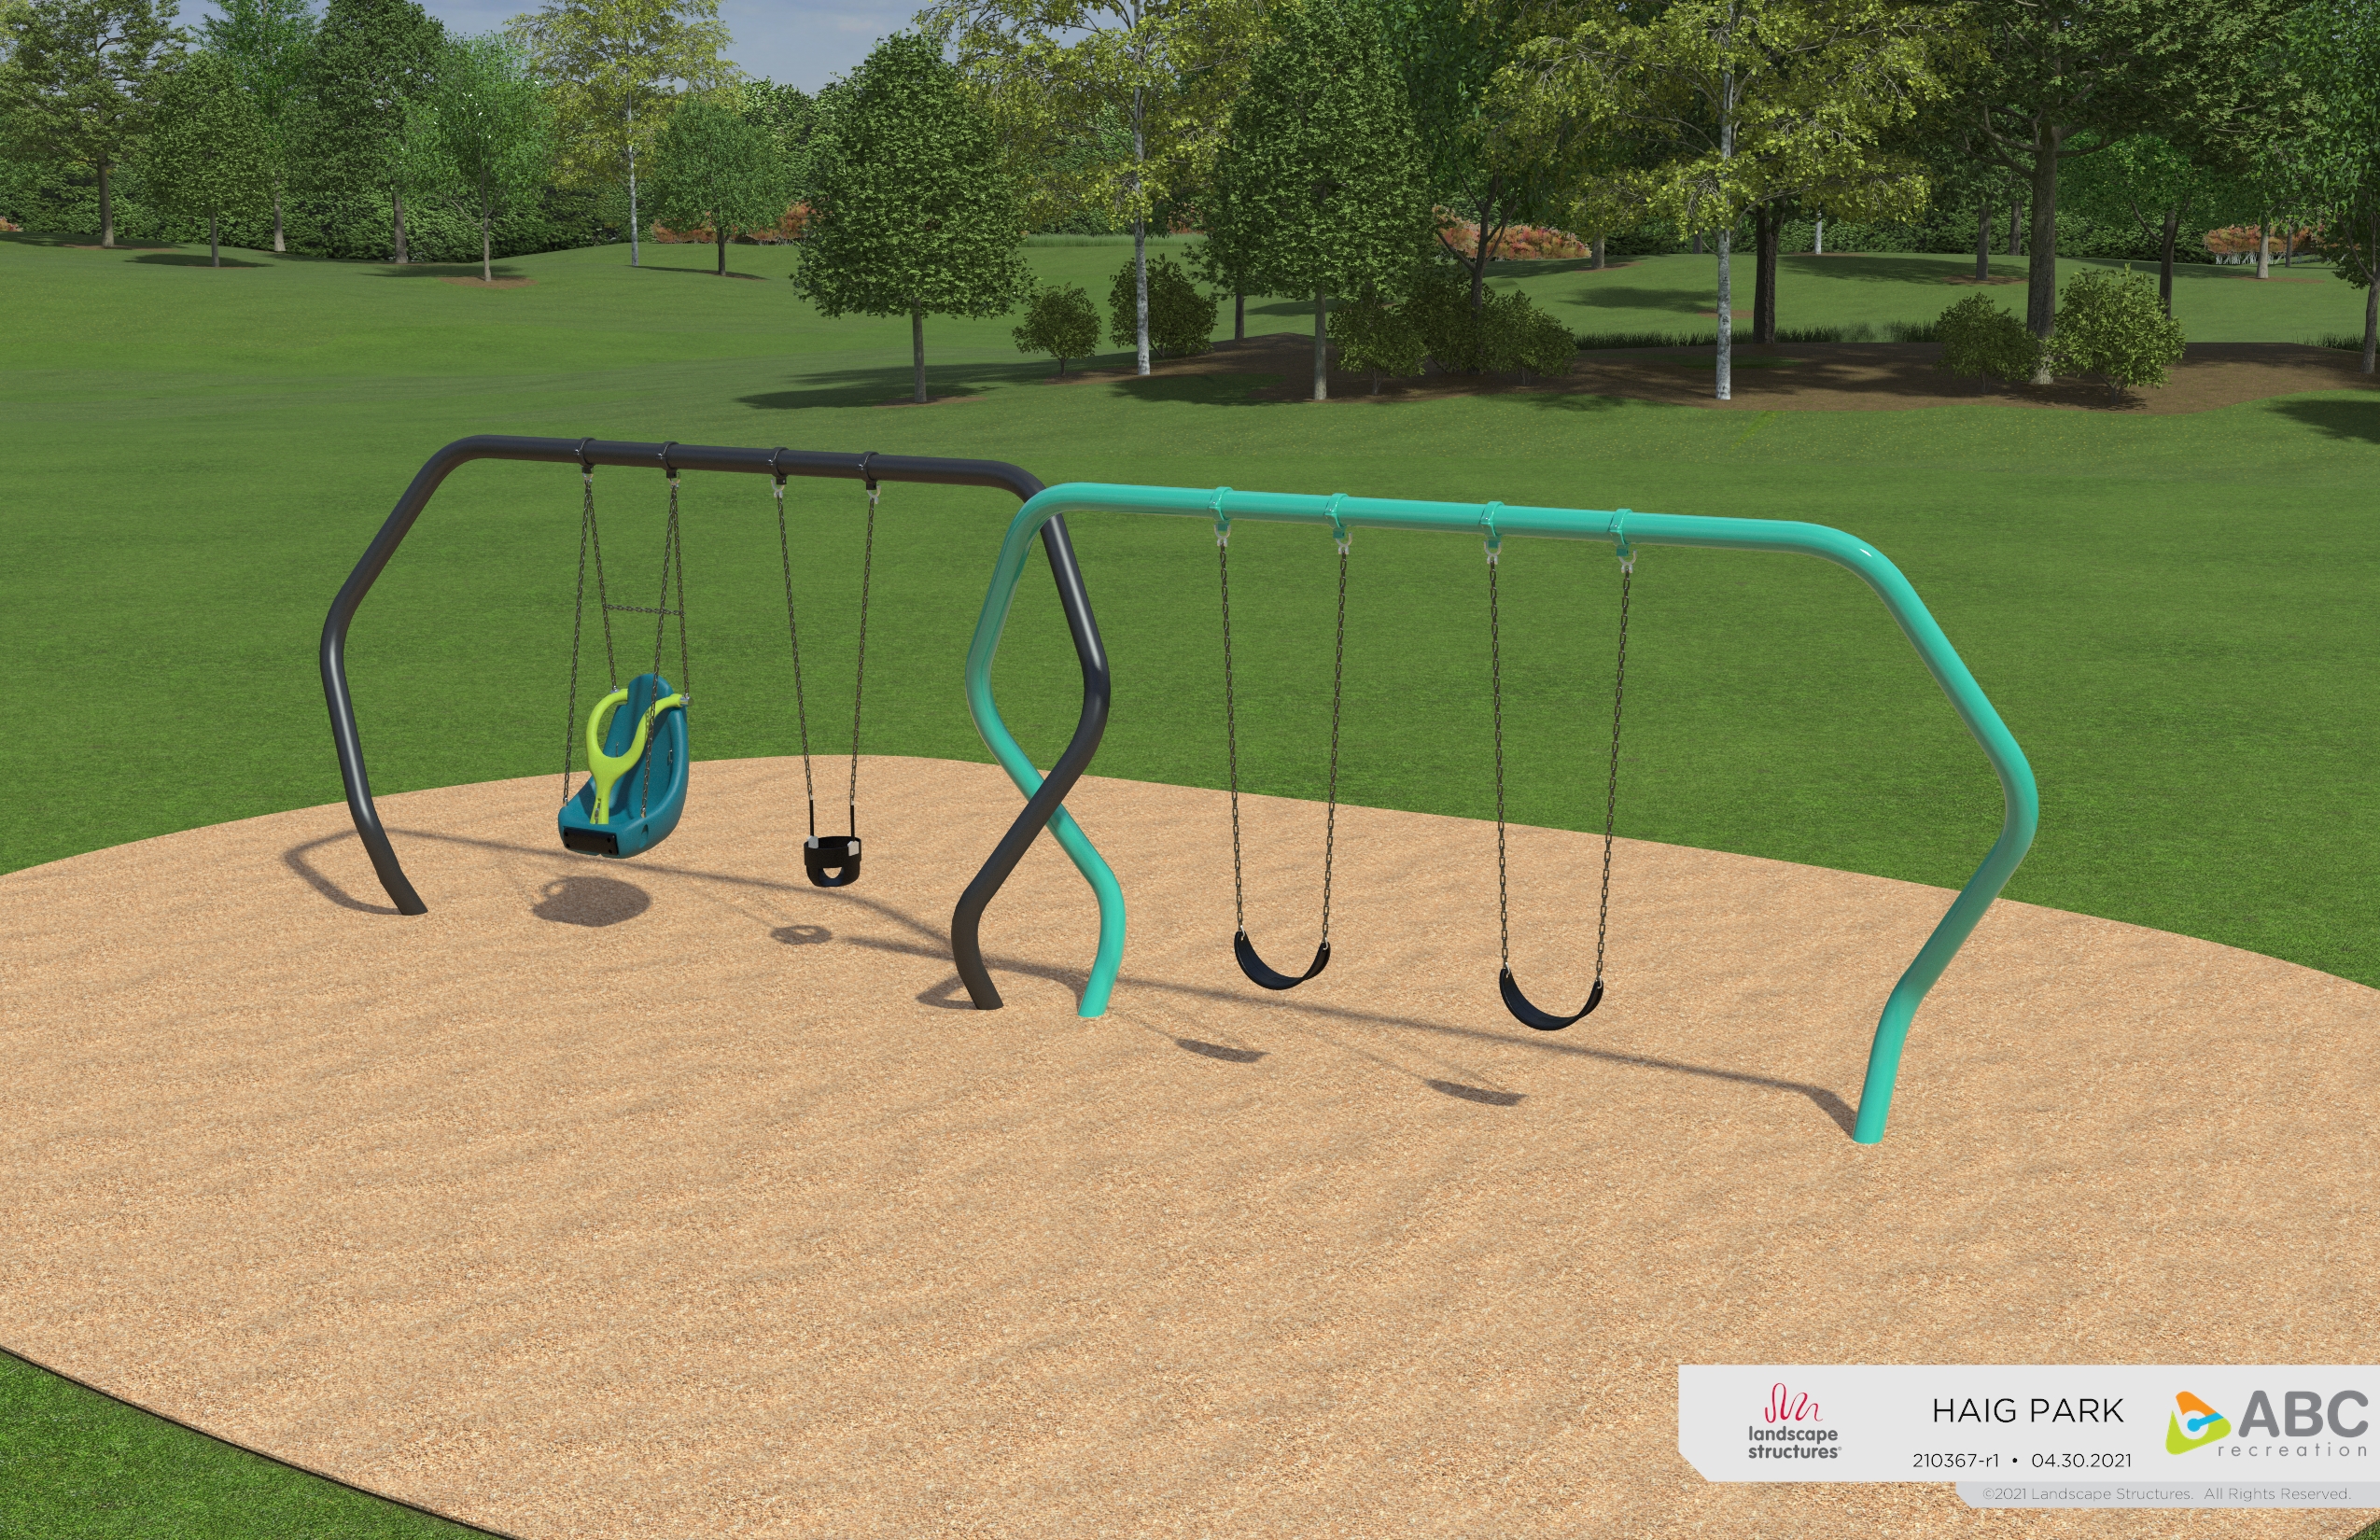 Haig Park Design Concept, shows swing set.